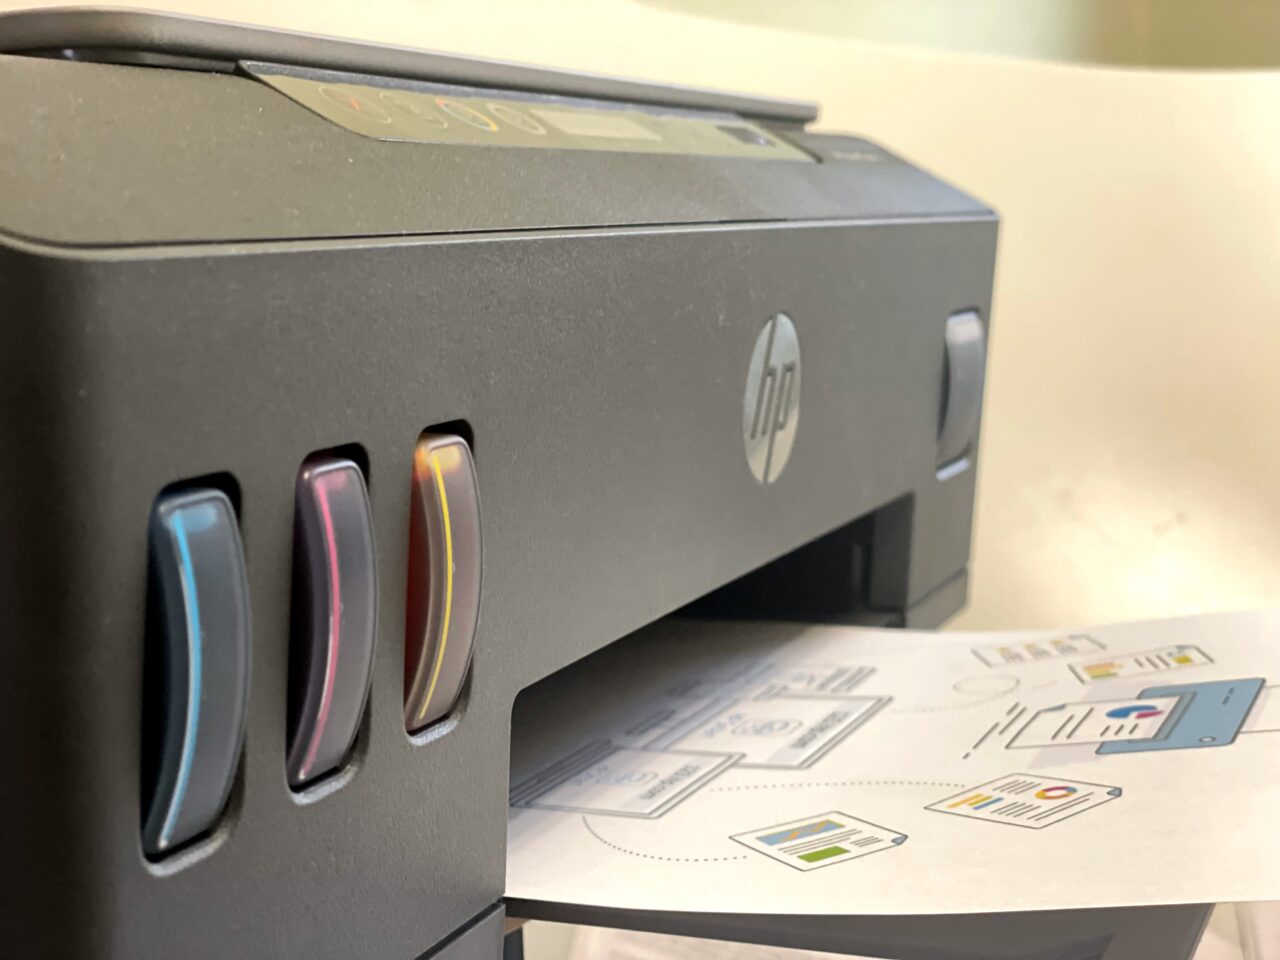 Drukarka HP z wyróżniającymi się kolorowymi wkładami tuszu na pierwszym planie, z wydrukowaną stroną z ilustracjami położoną poniżej.